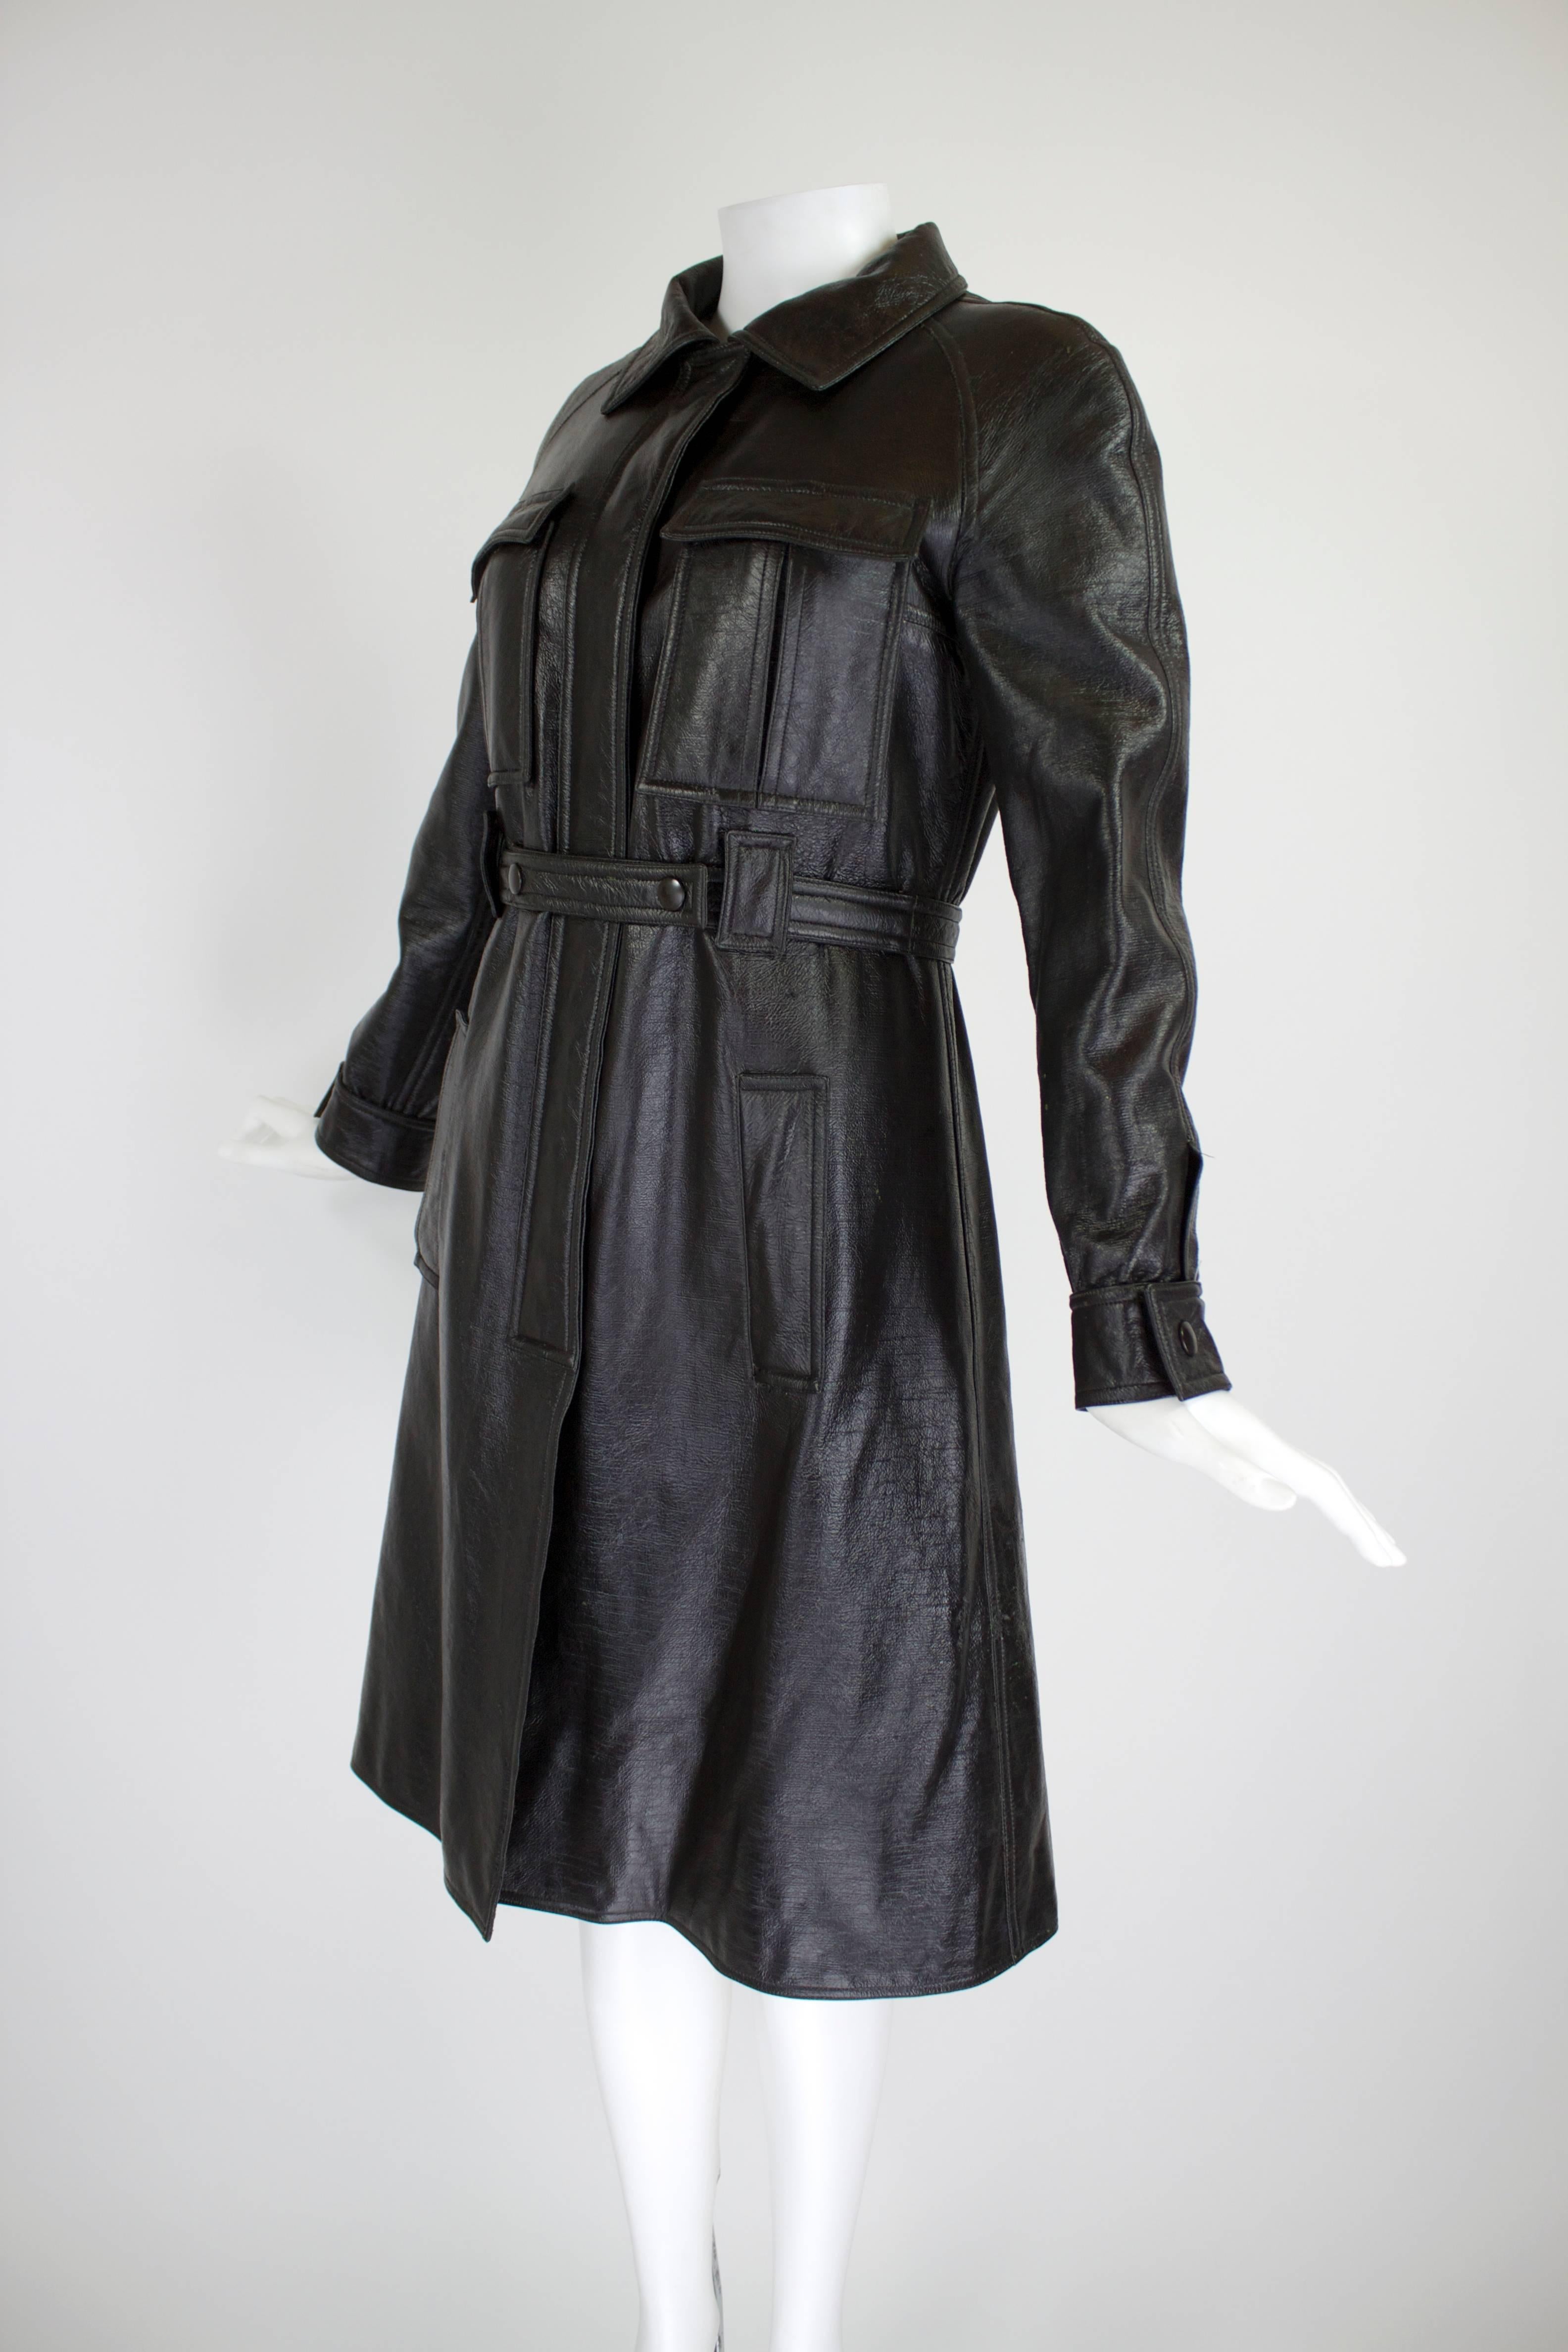 Women's 1960s Courreges Black Textured Vinyl Trench Coat with Fleece Lining